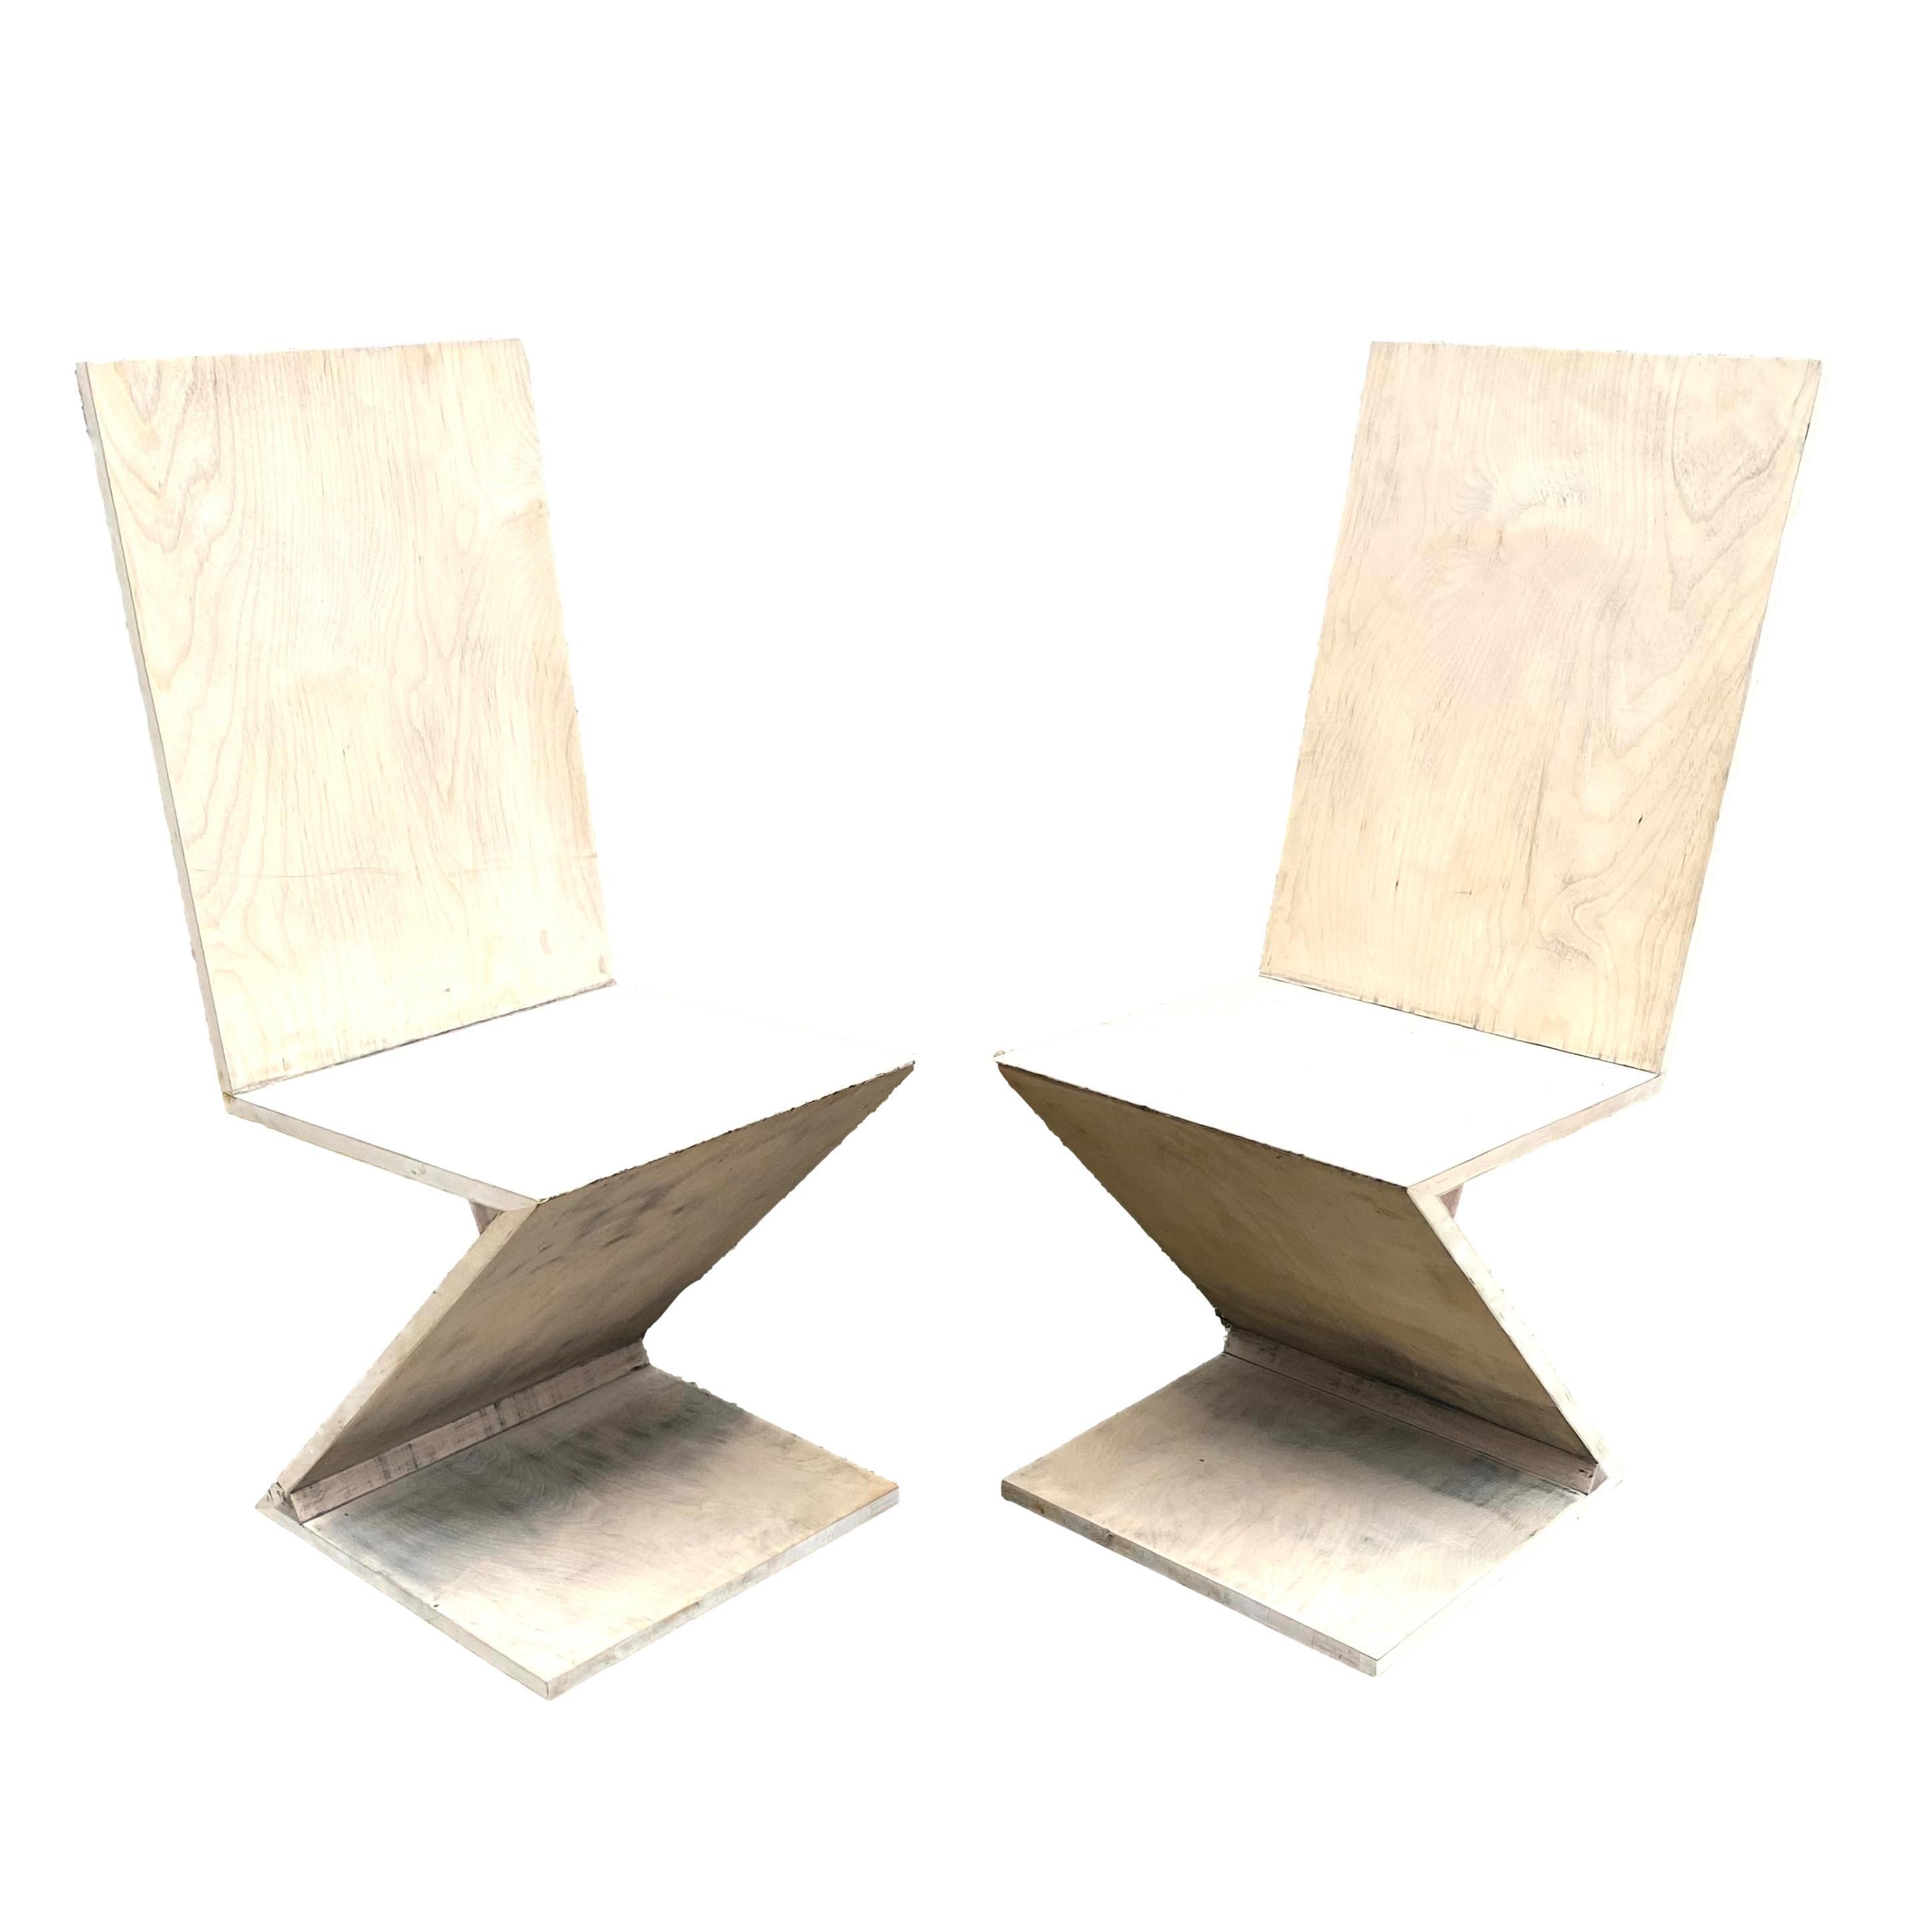 Ein Paar Zickzack-Stühle im Stil von Gerrit Rietveld. Wird einzeln verkauft.